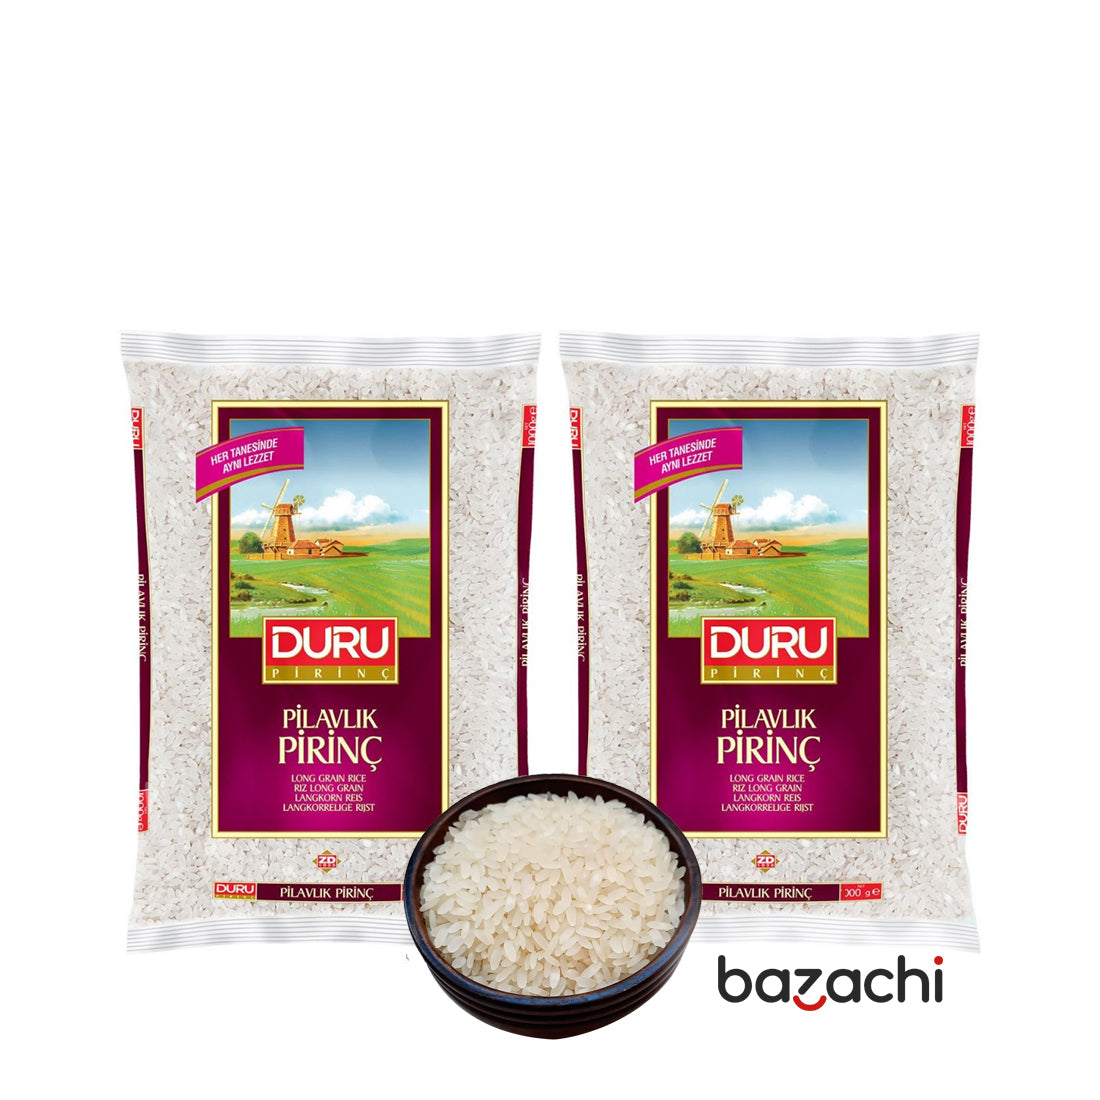 Duru Long Grain Rice Pilavlik Pirinc 5kg